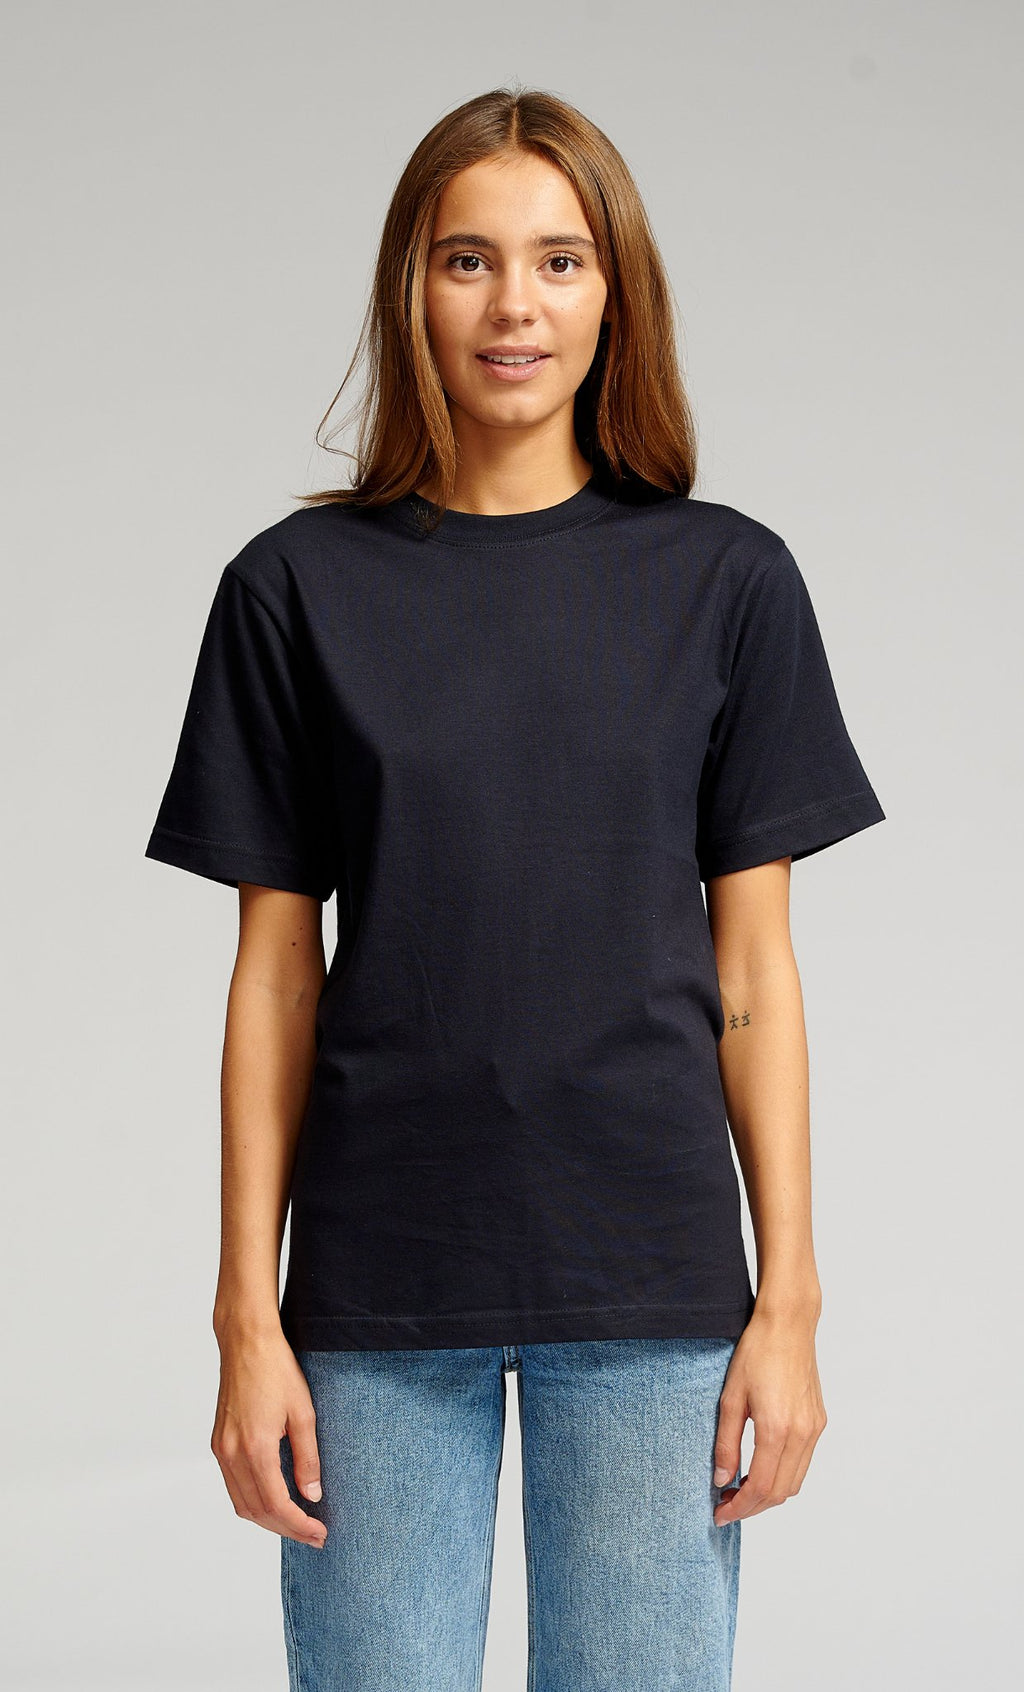 Camiseta de gran tamaño - Paquete para mujer (9 uds.)